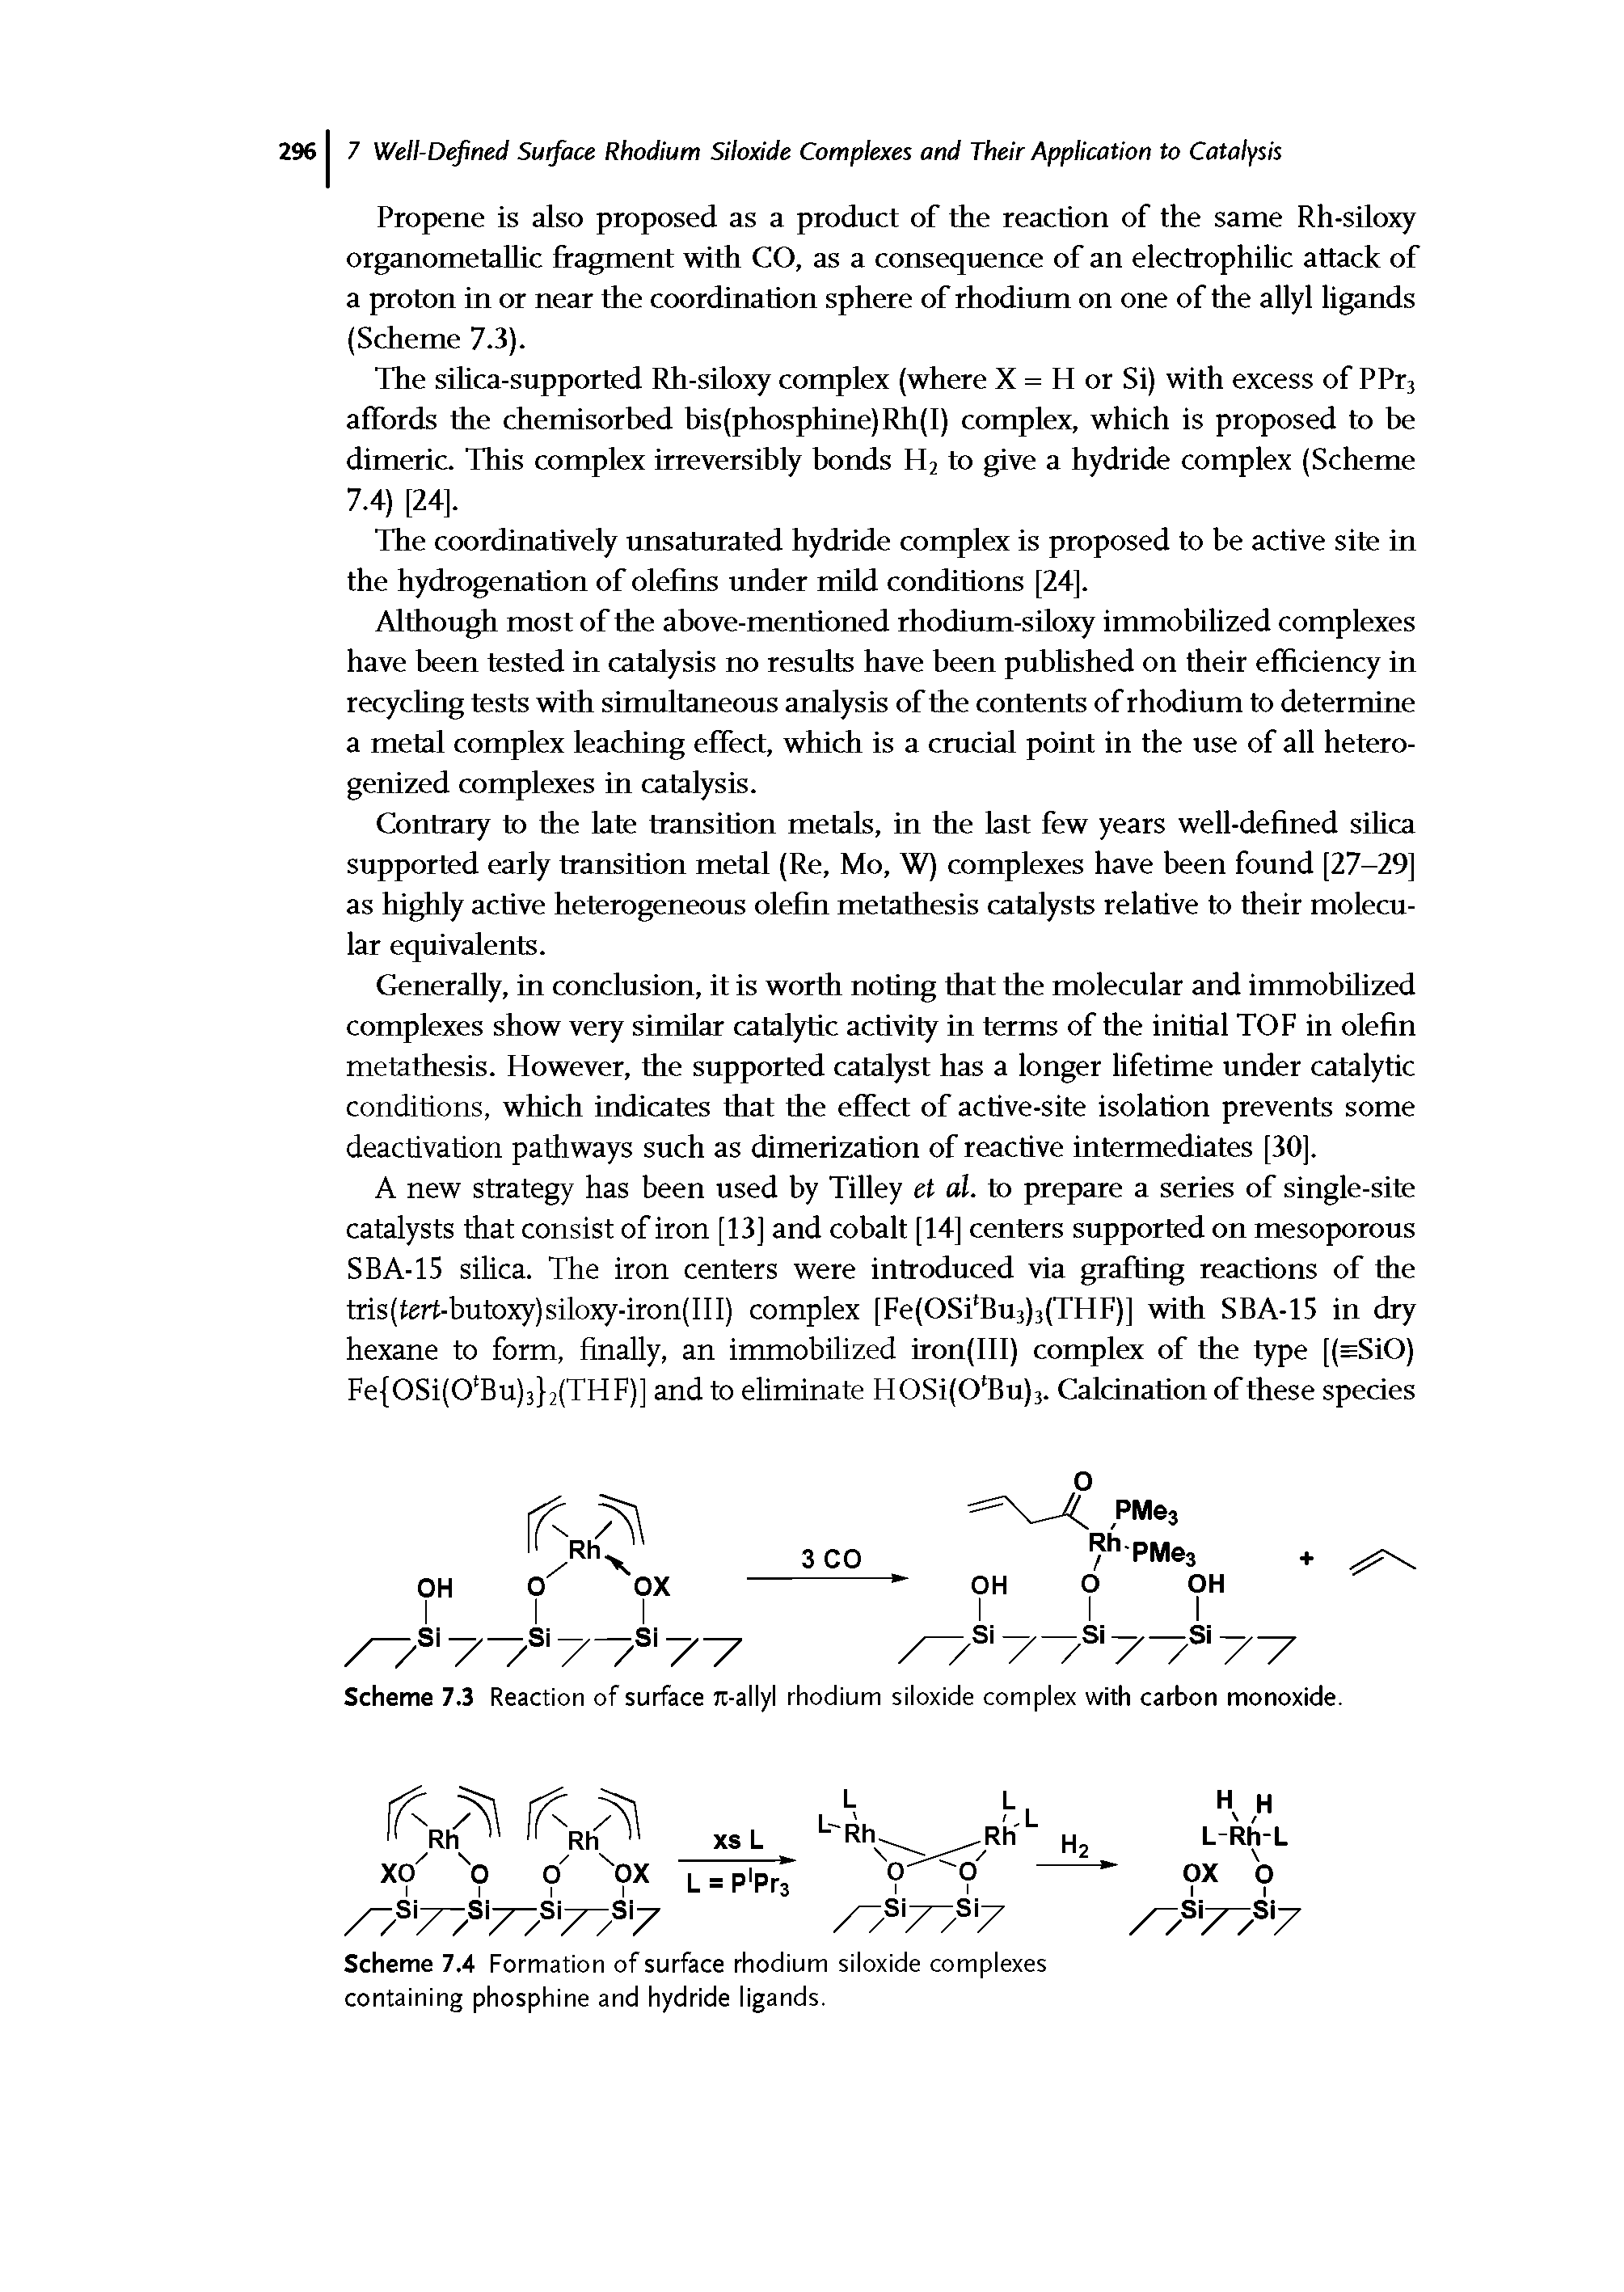 Scheme 7.3 Reaction of surface Jt-allyl rhodium siloxide complex with carbon monoxide.